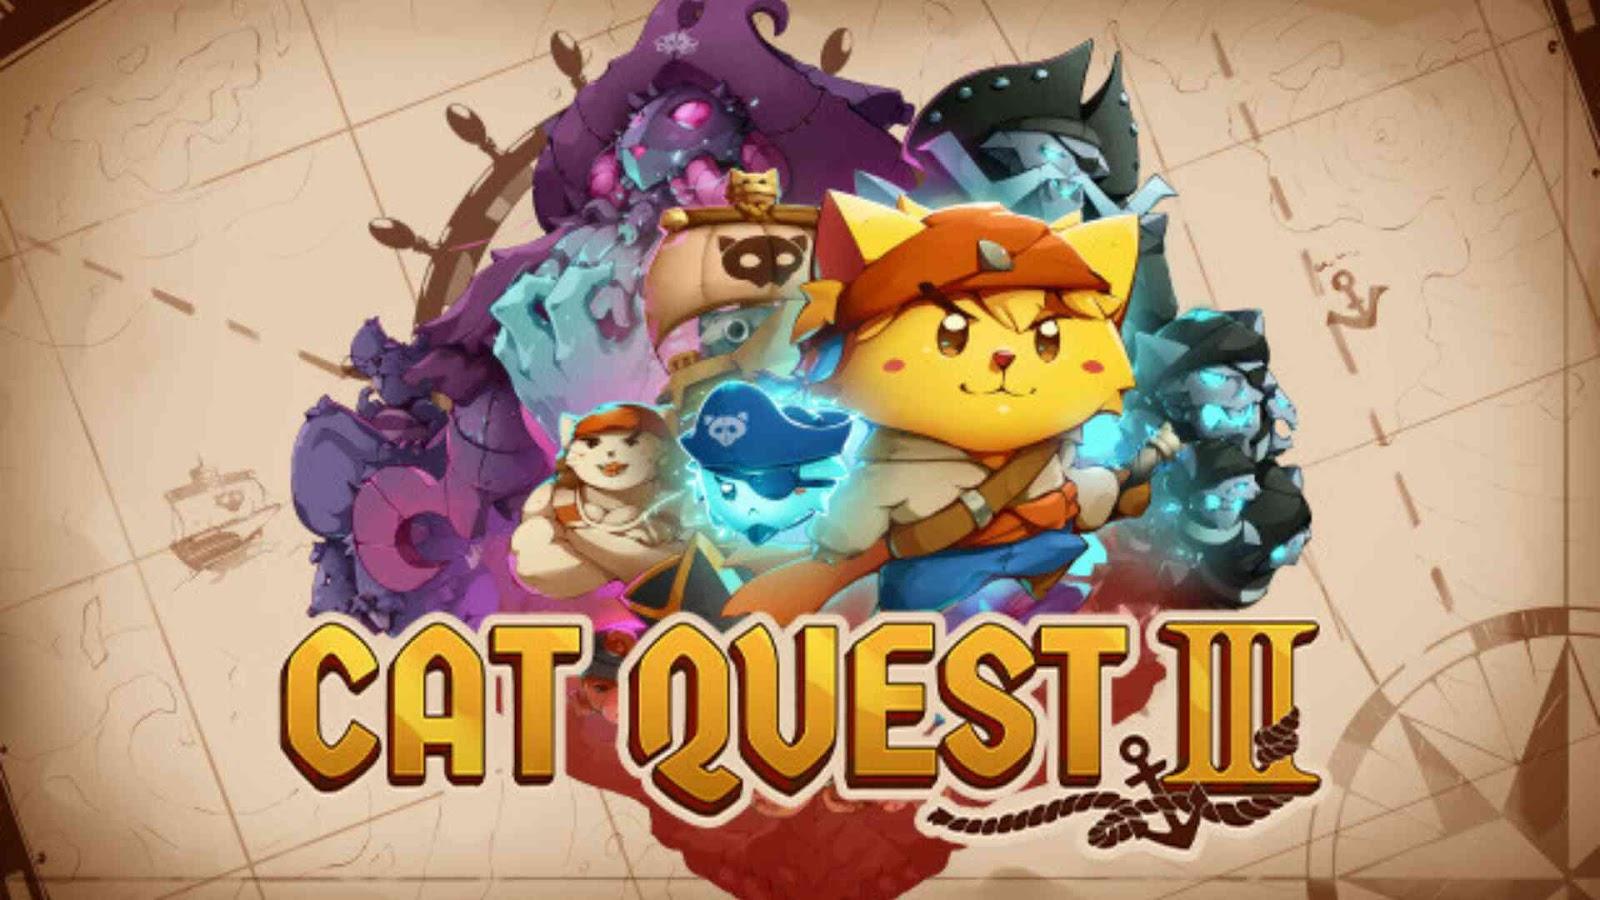 7. Cat Quest 3